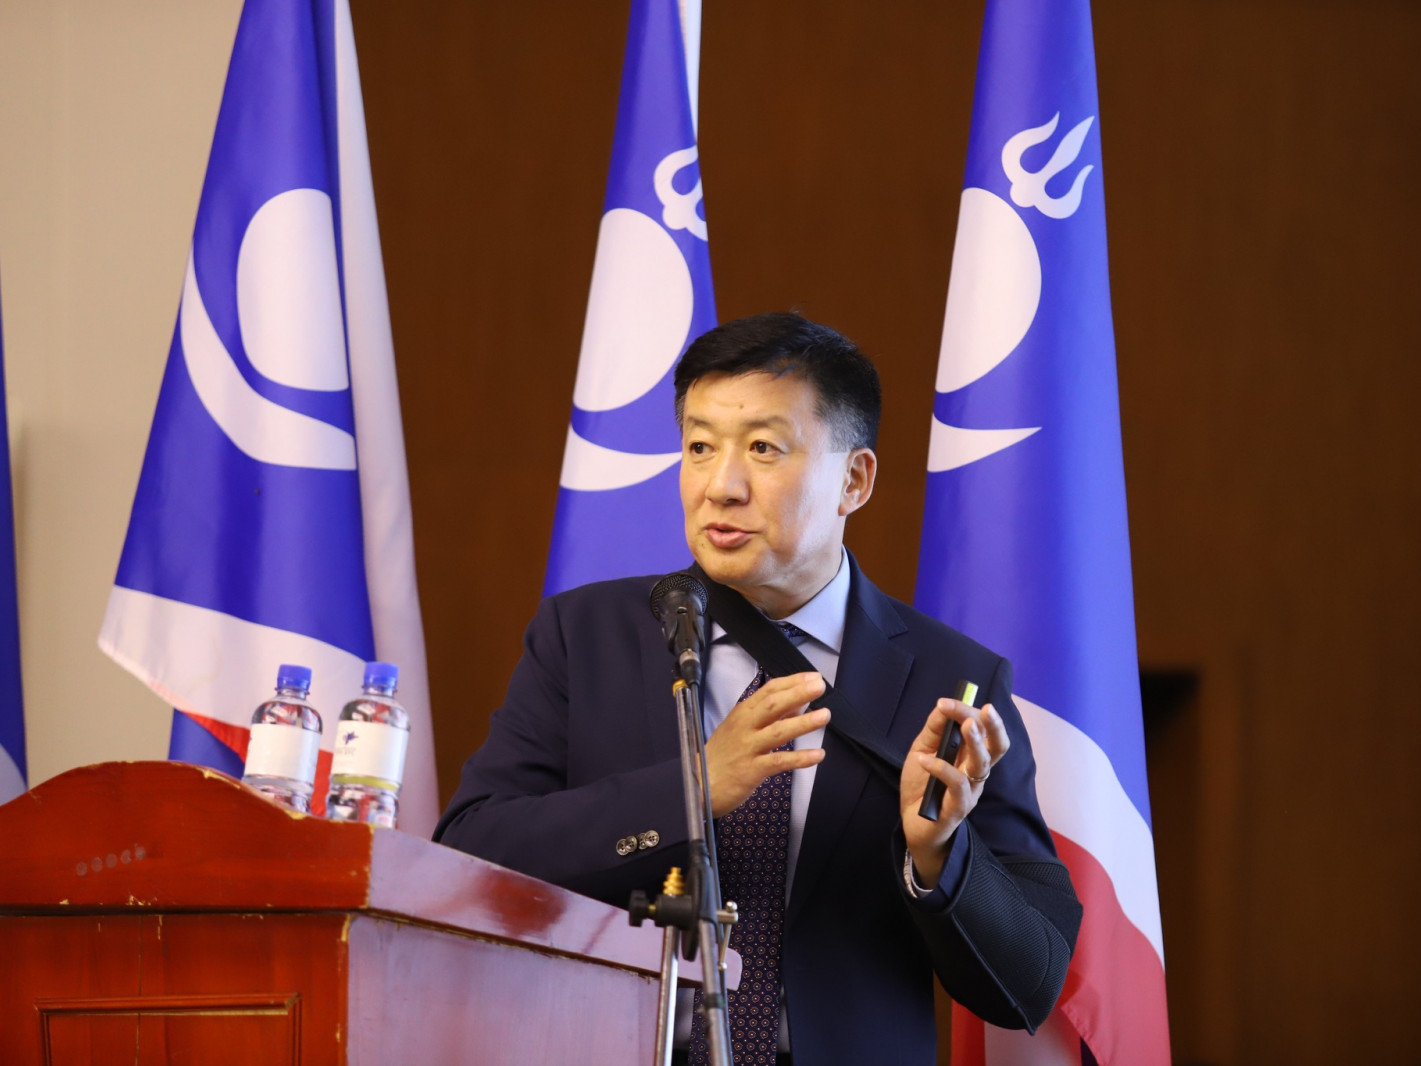 ВИДЕО: "Монгол хүн бүр 30 сая төгрөгийн өртэй болсон" гэж АН-ын тэргүүн дэд дарга С.Баярцогт мэдэгджээ